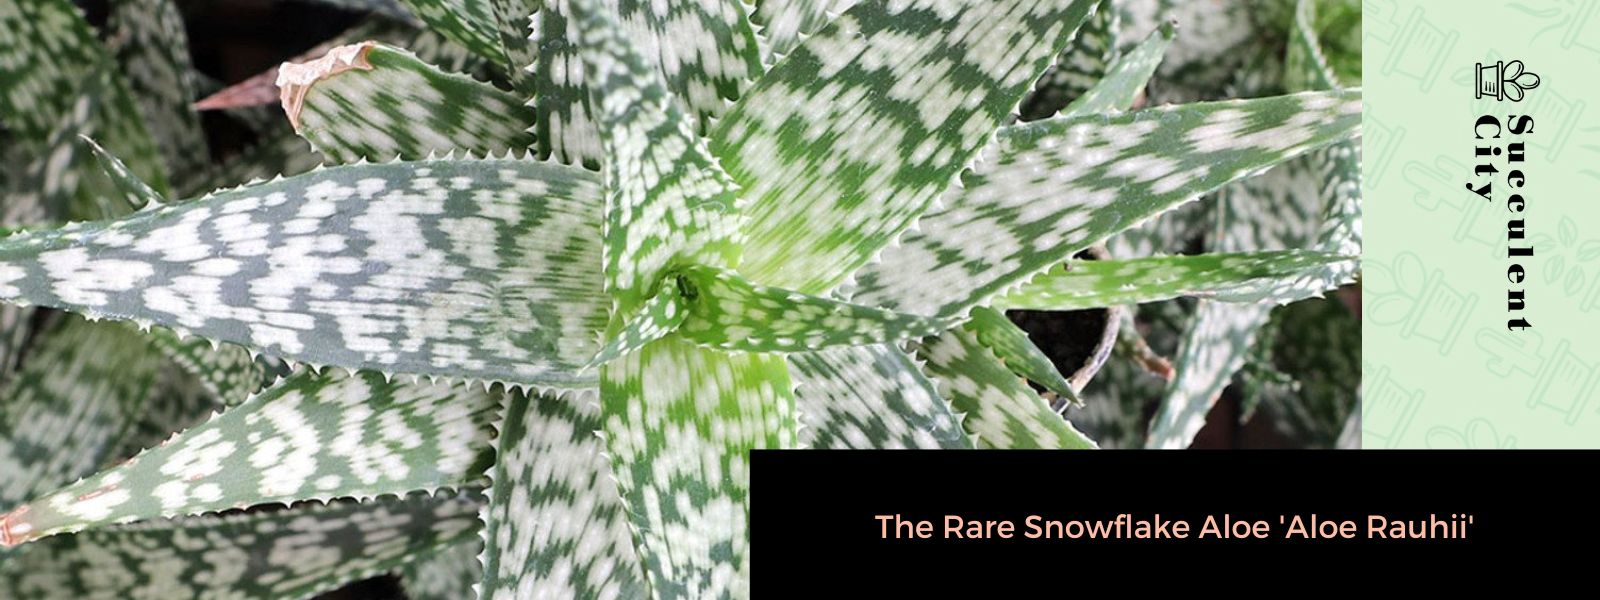 El raro aloe copo de nieve 'Aloe Rauhii'